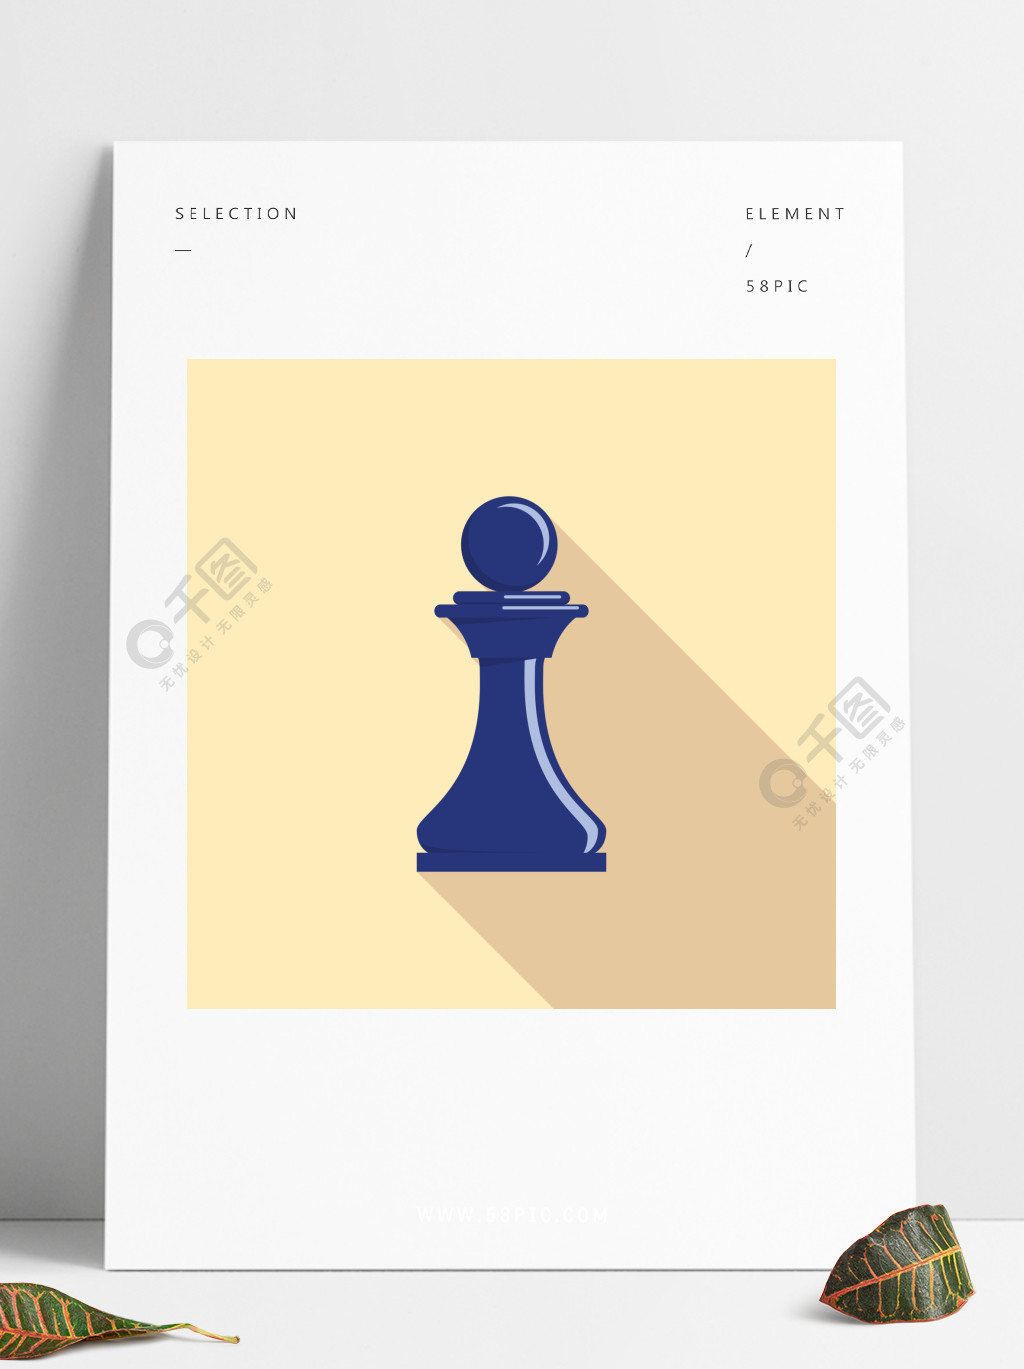 蓝色国际象棋棋子图标蓝色棋典当传染媒介象的平的例证网络设计的蓝棋